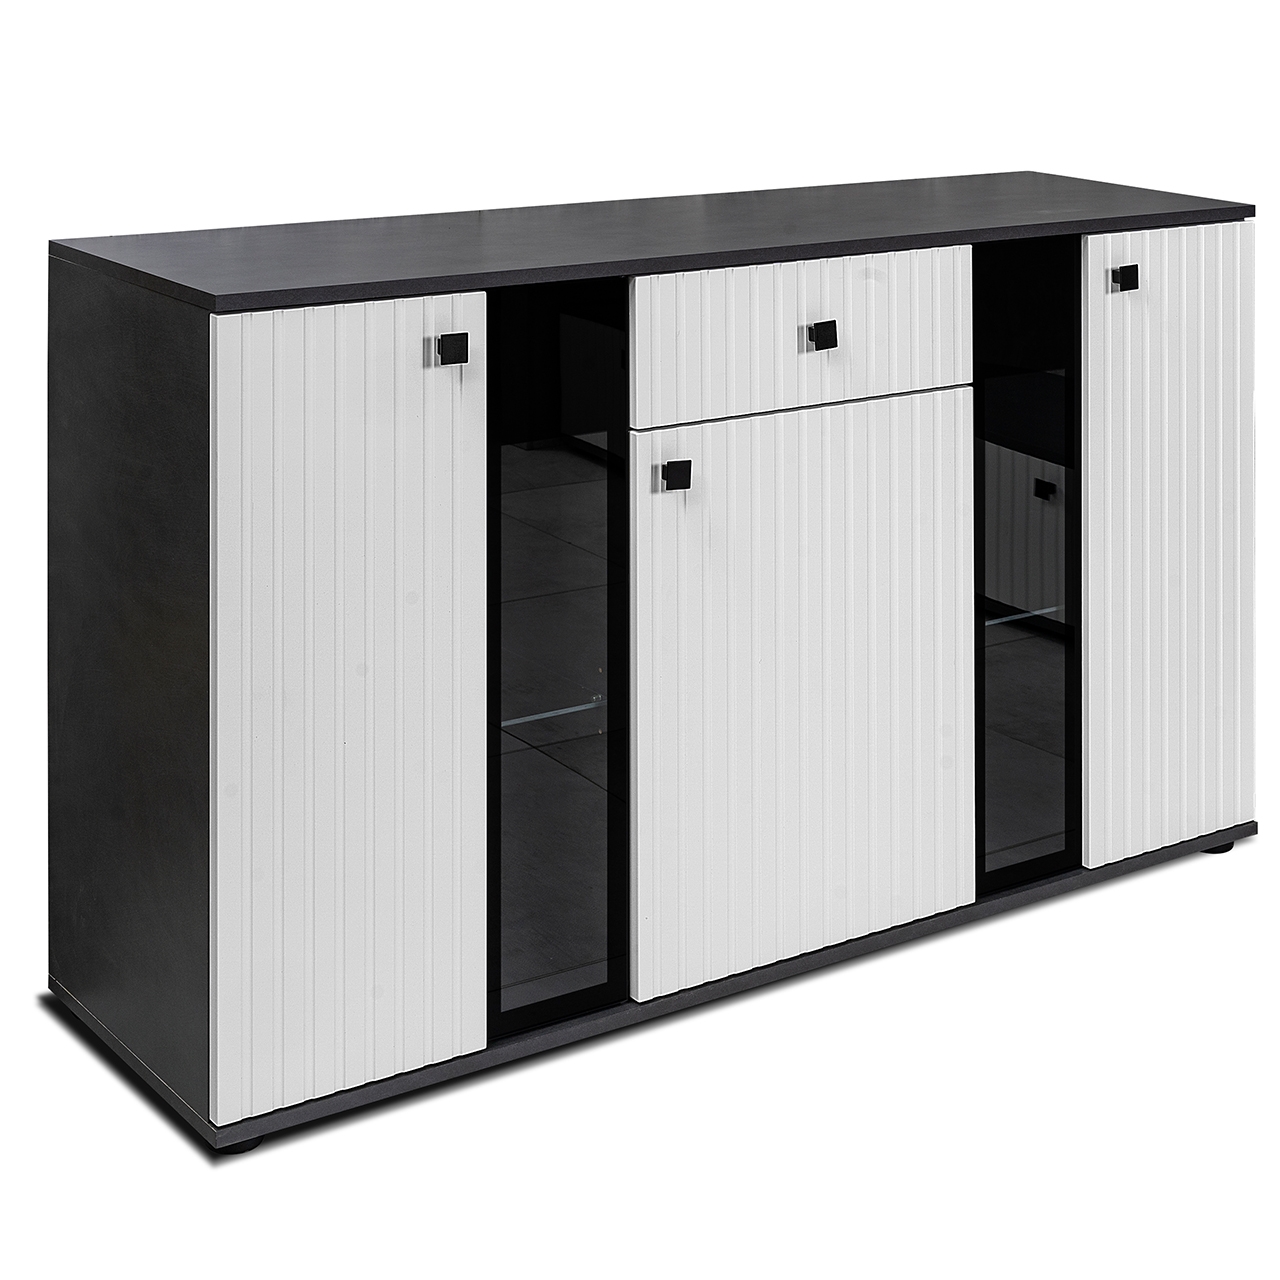 Storage cabinet SALSA SLATS matera / white